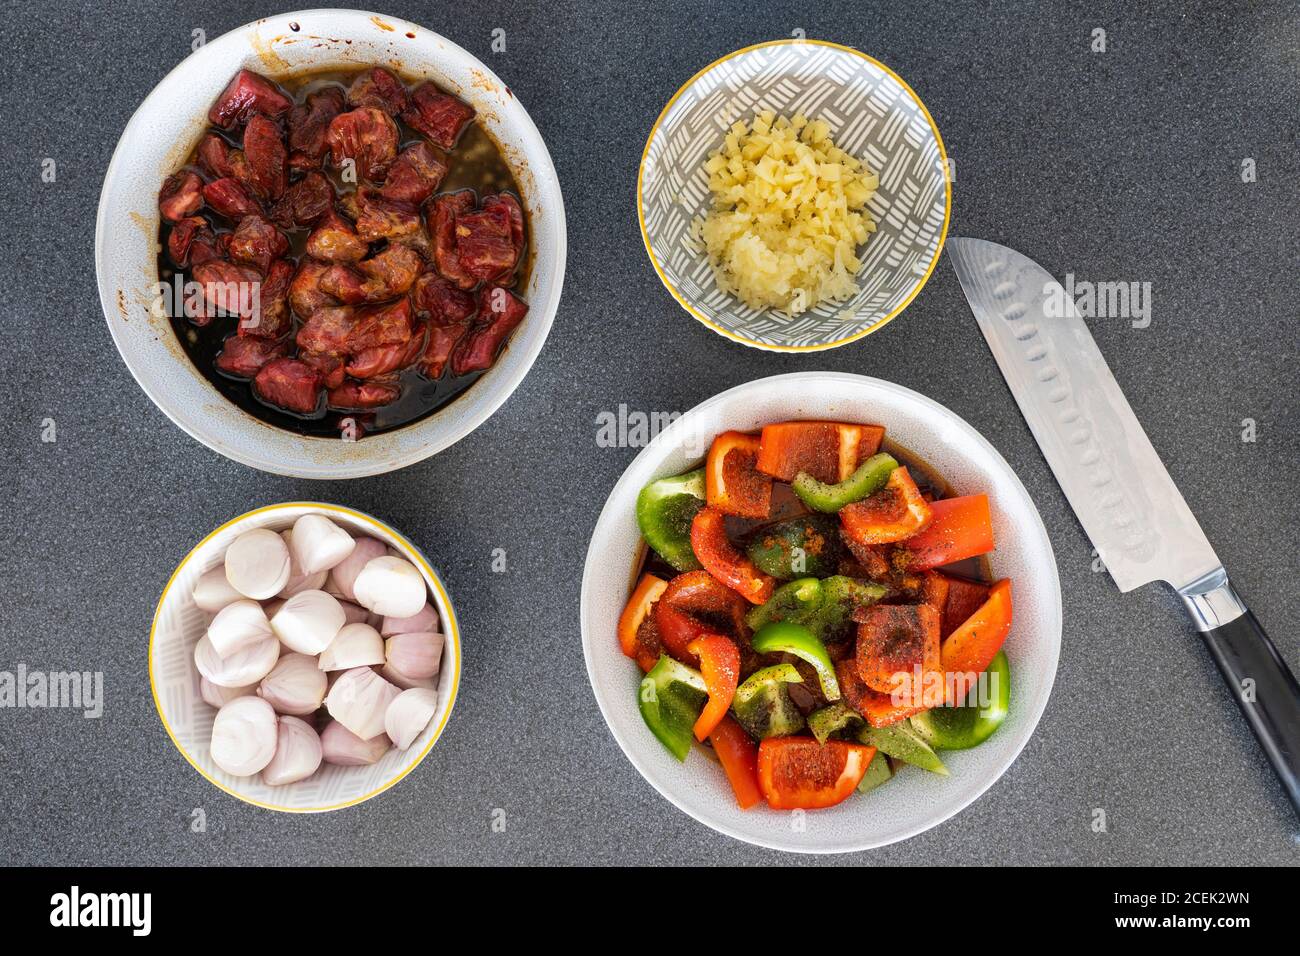 Vorbereitete gehackte Rohzutaten - Rindfleisch, Paprika, Zwiebeln, Knoblauch und Ingwer in Schüsseln mit einem japanischen Messer bereit für das Kochen einer Rührfritte Gericht Stockfoto